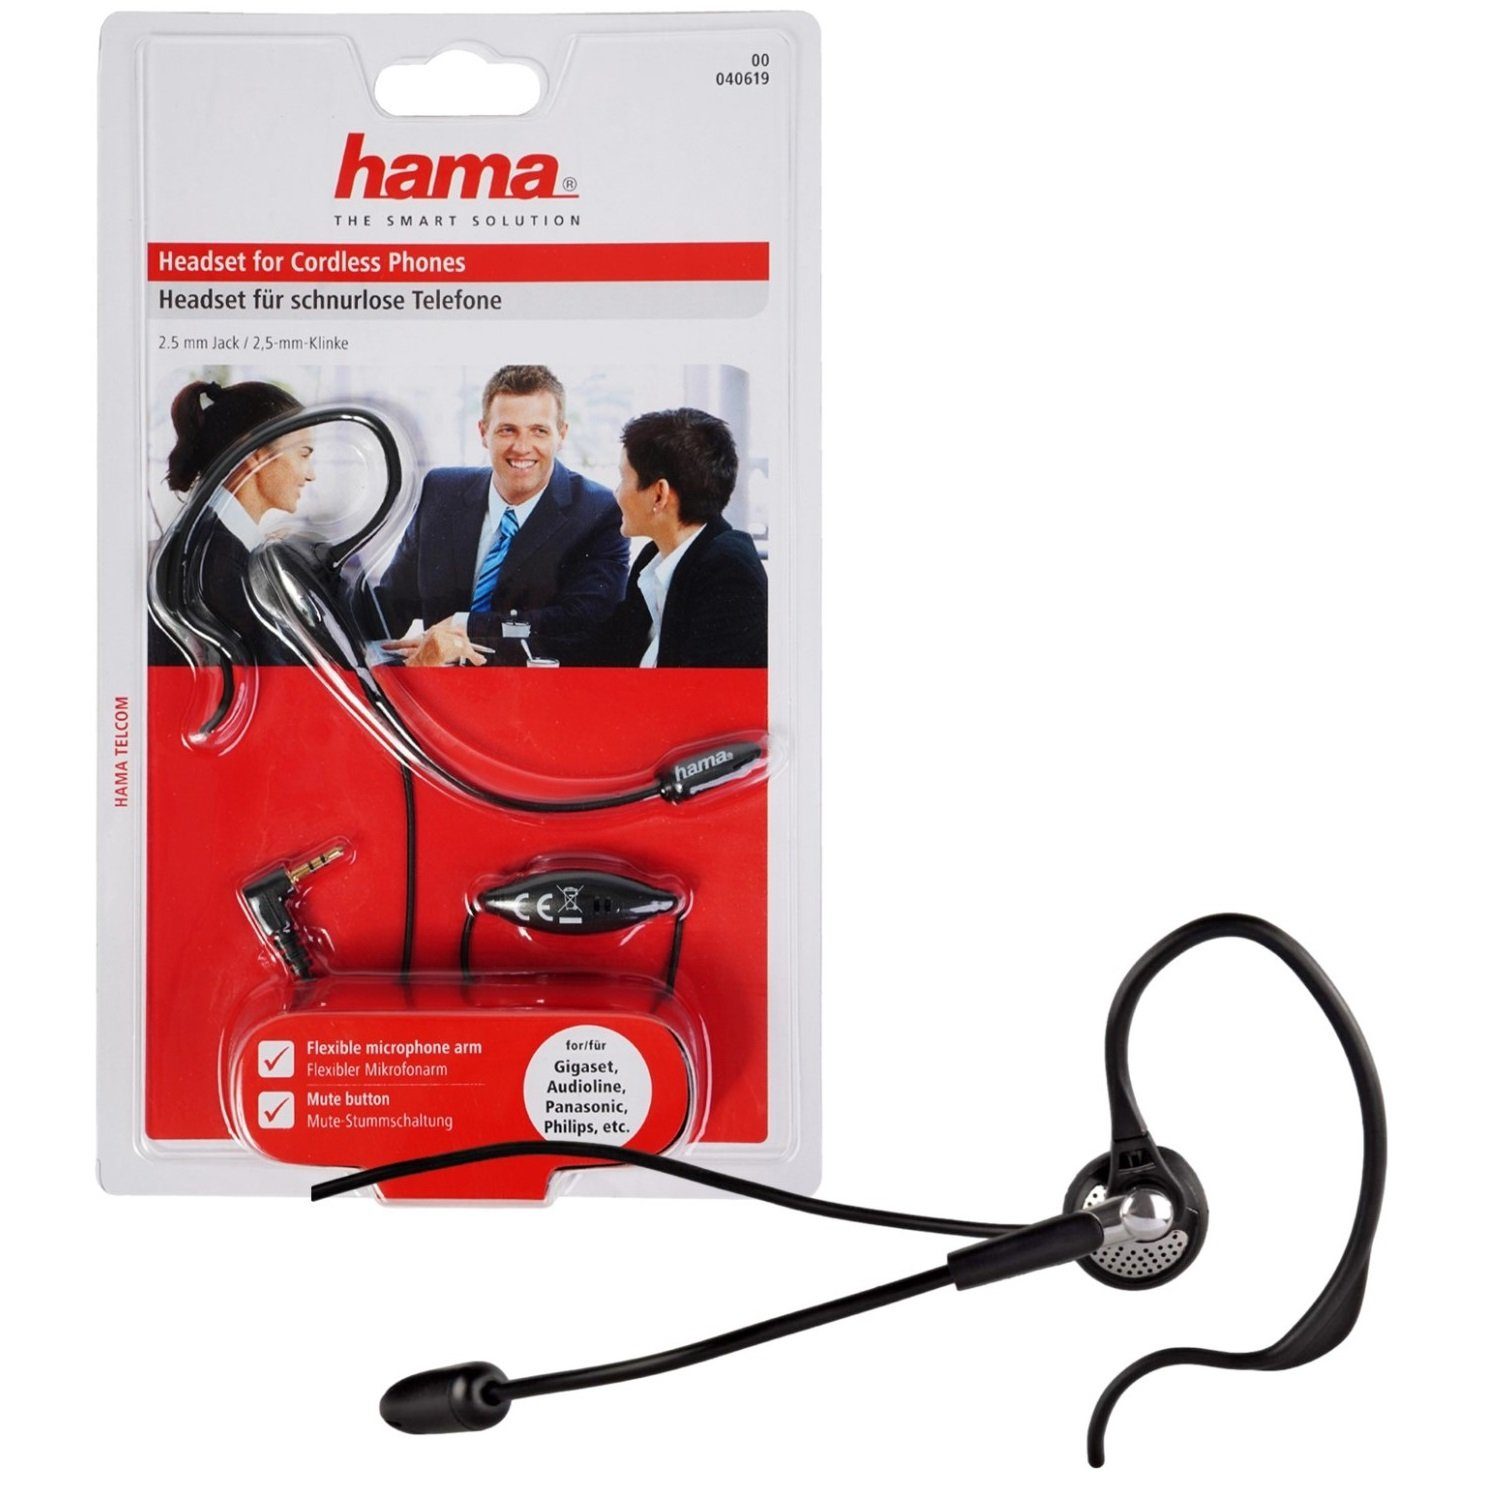 Hama Ohrbügel Headset für schnurlose Telefone, 2,5-mm-Klinke Headset,  Flexibler Mikrofonarm erlaubt eine angenehme und optimale Positionierung | Kopfhörer